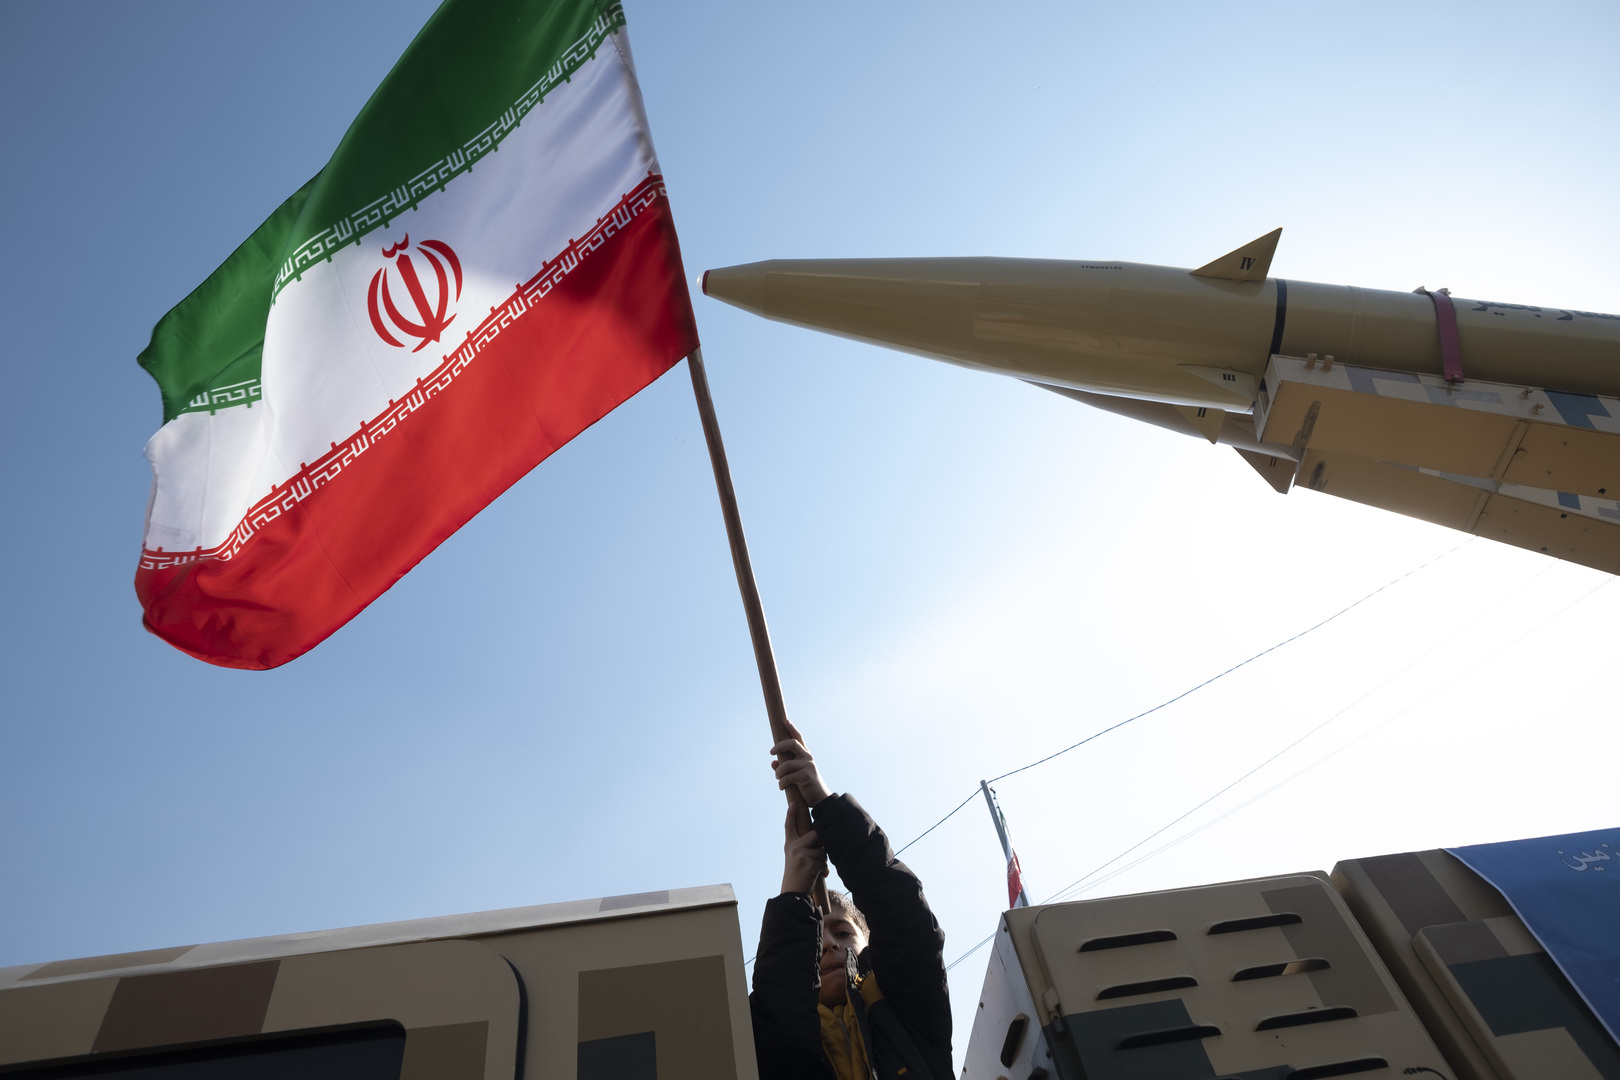 أمير عبد اللهيان يكشف عن رسالة وجهتها إيران لدول الجوار قبل الهجوم على إسرائيل بـ72 ساعة